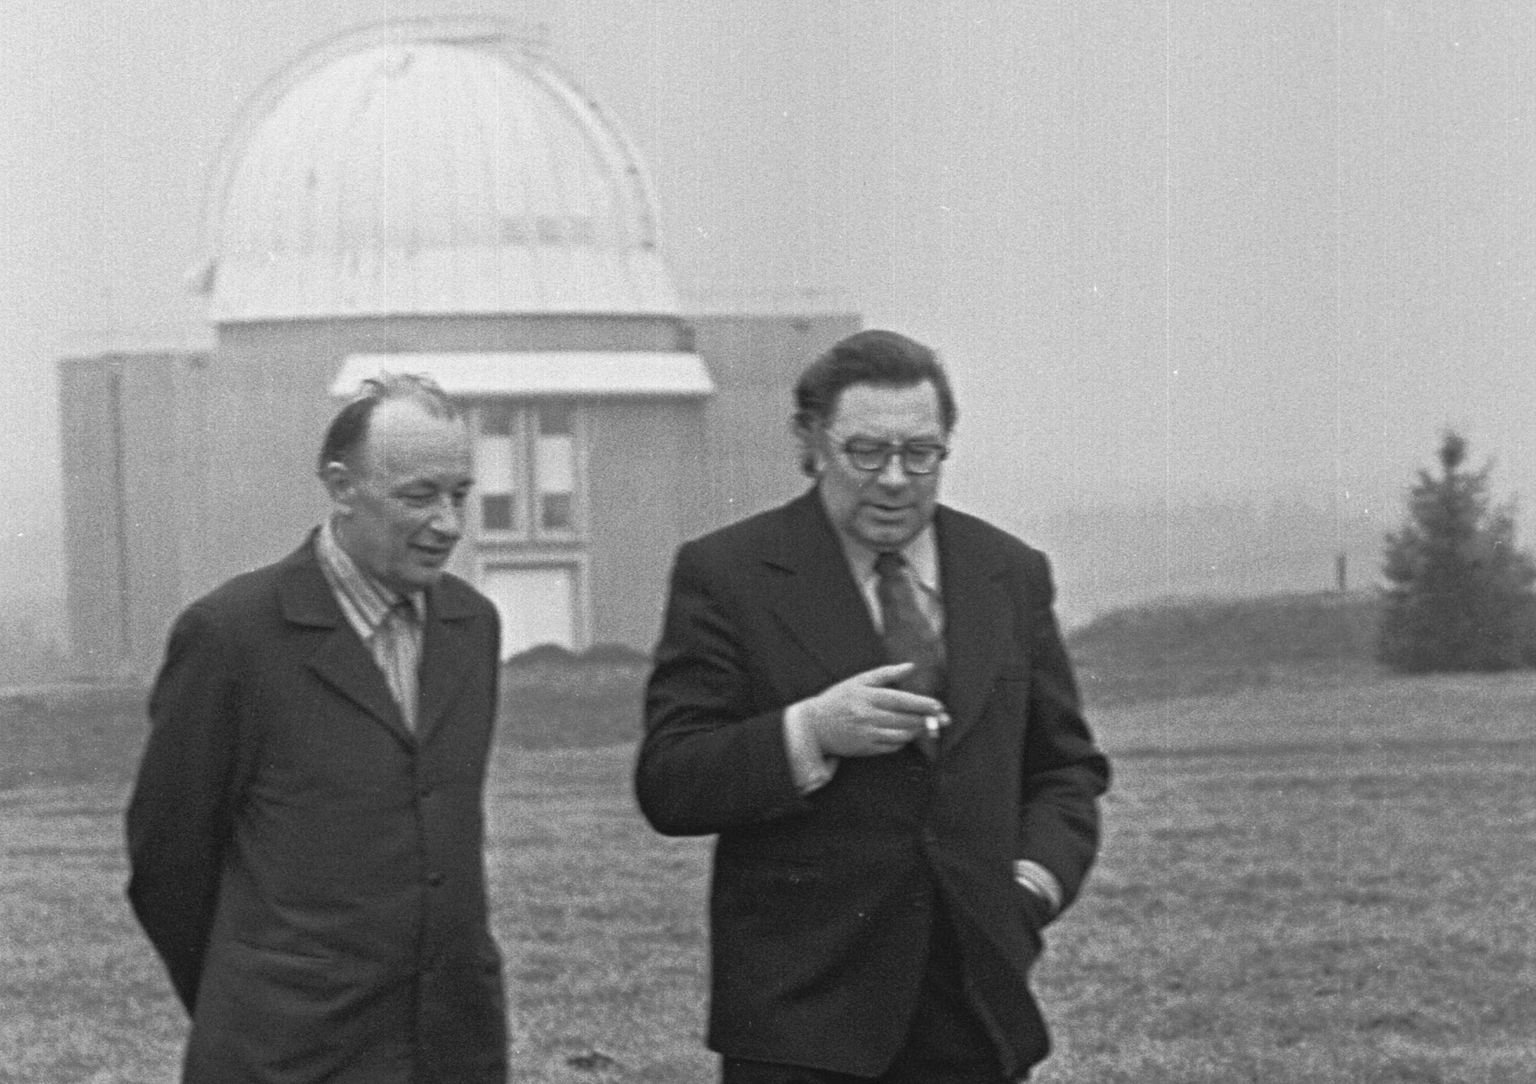 Tõravere observatoorium. Professorid Grigori Kuzmin ja Charles Villmann jalutavad midagi arutades mööda teed. Tagaplaanil üks Tõravere observatooriumi kuplitest. Grigori Kuzmin (1917-1988) oli Ernst Öpiku õpilane ja Jaan Einasto õpoetaja.